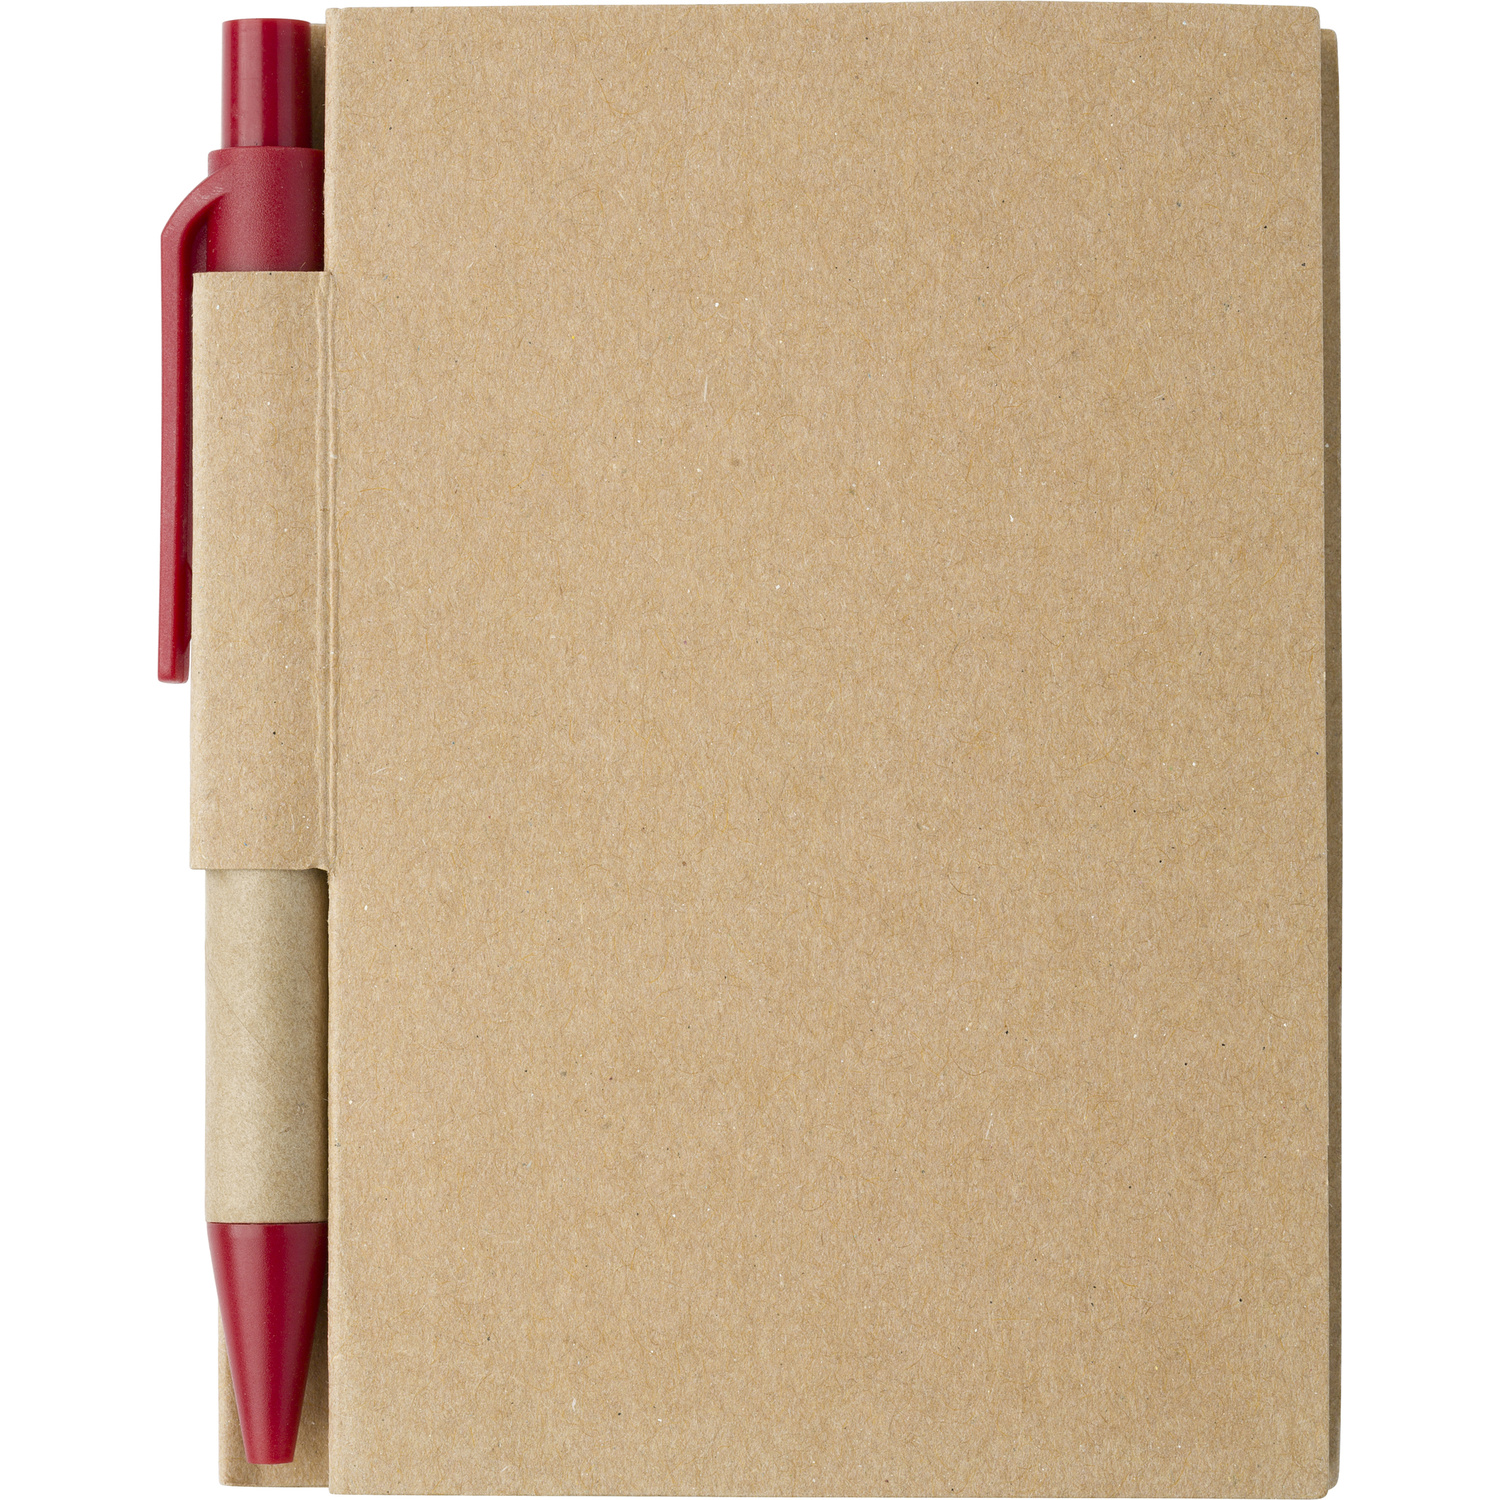 006419 008999999 2d000 frt pro01 fal - Cardboard notebook with ballpen